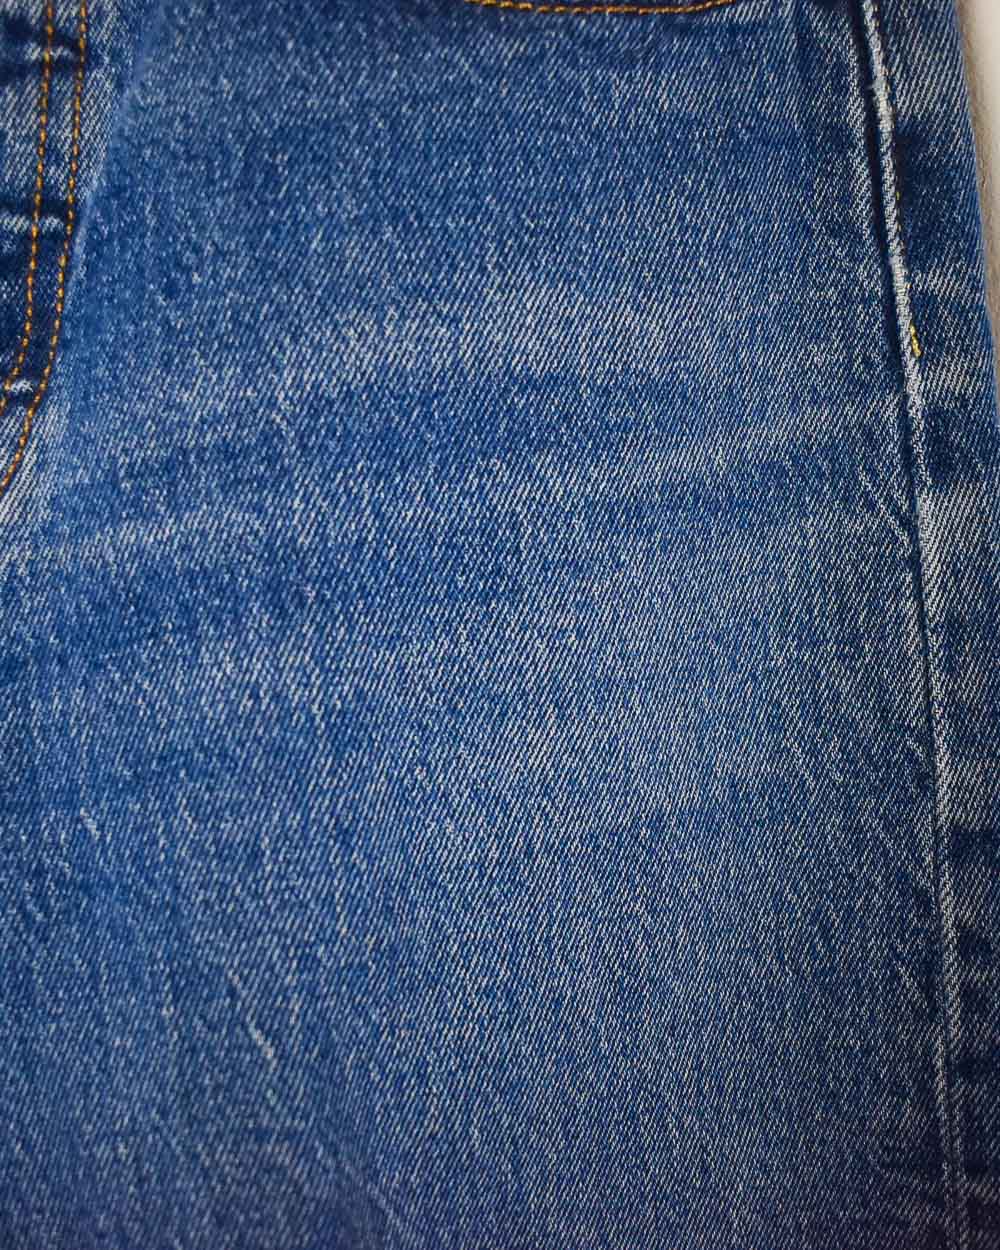 Blue Levi's 501 Jeans - W26 L28